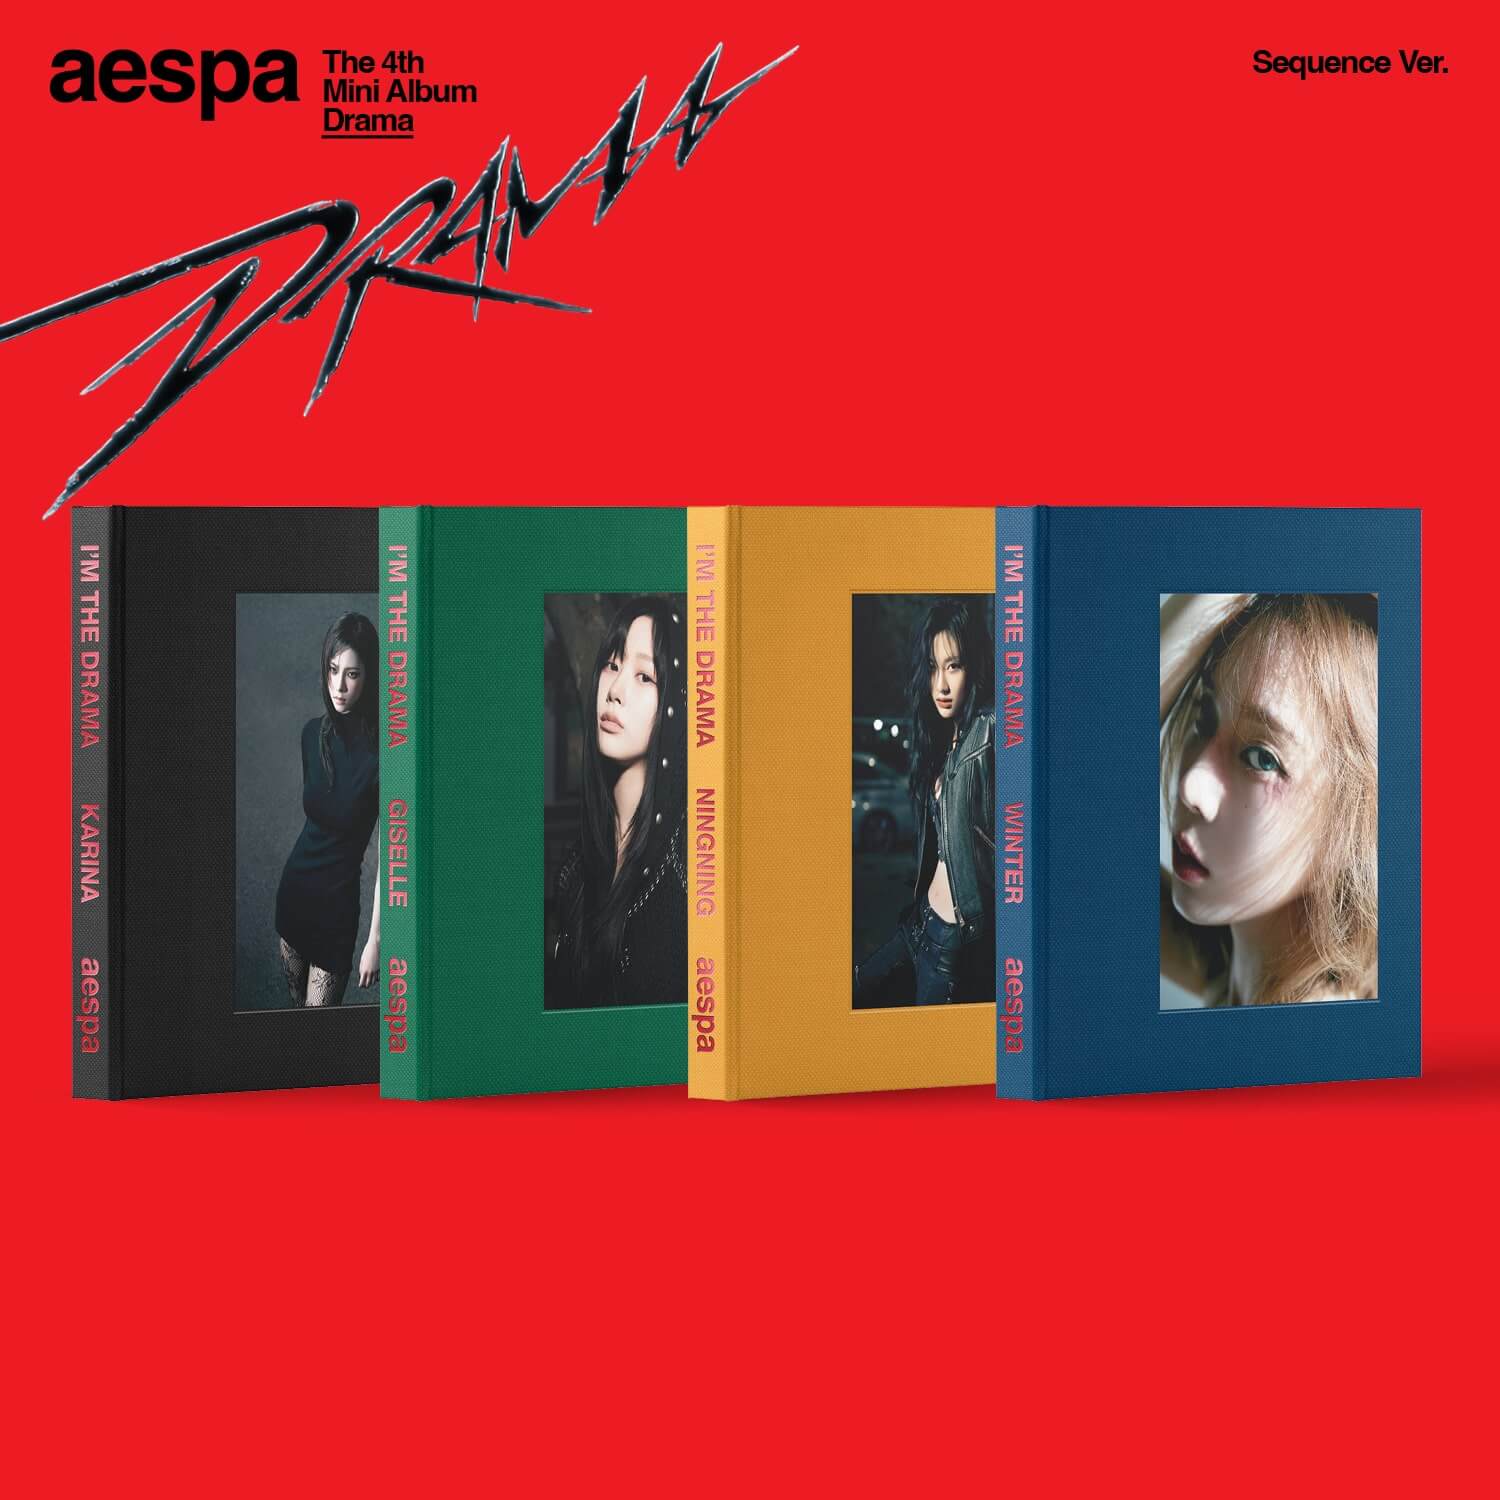 AESPA 4th Mini Album Drama (Sequence Version)